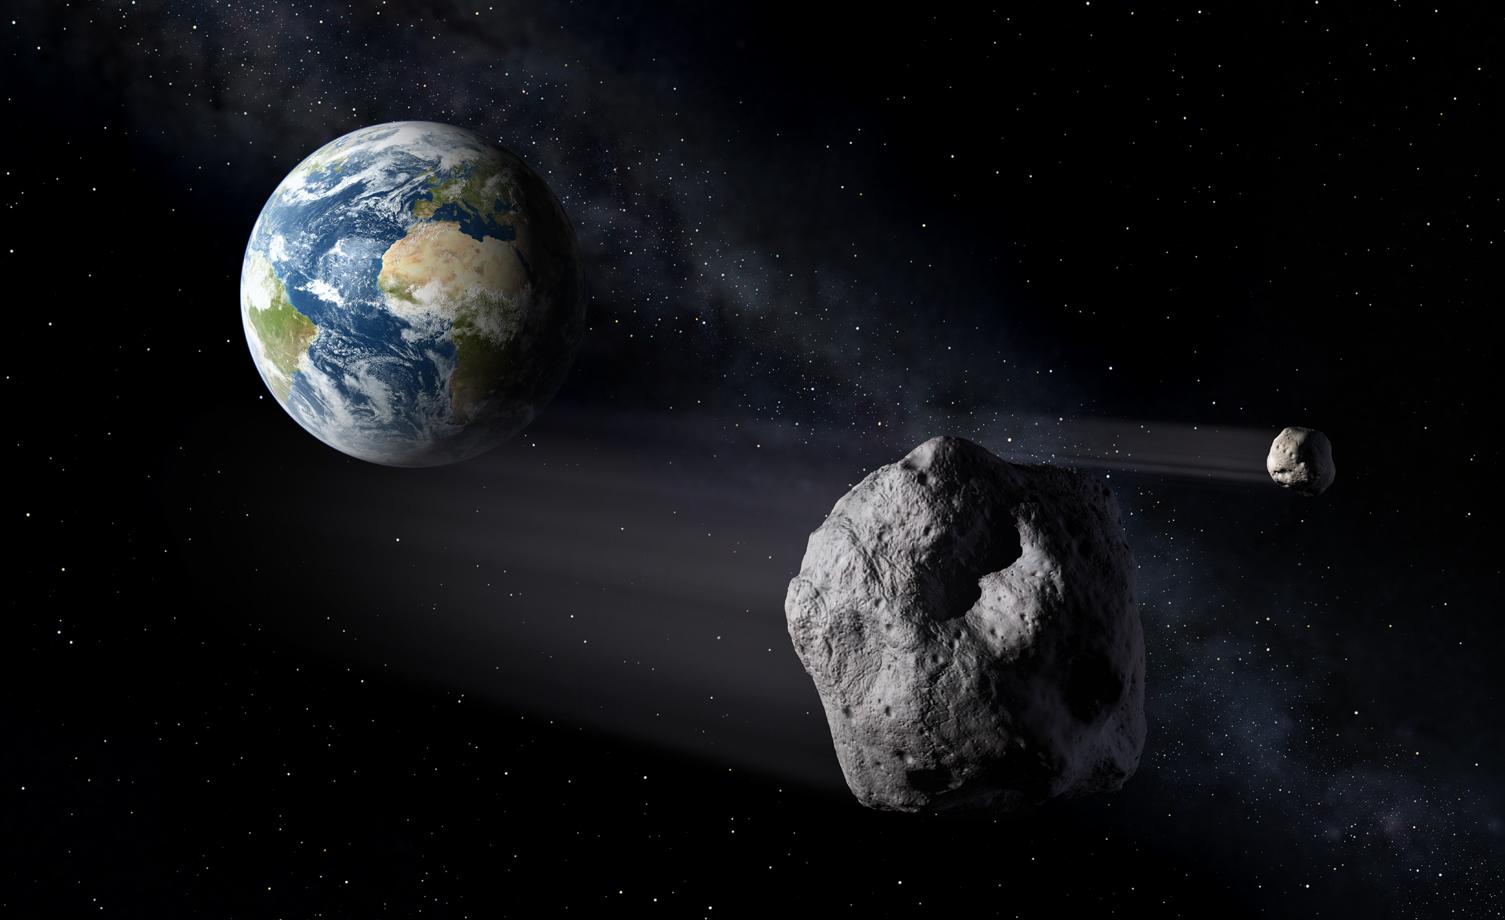 2020'de Dünya'ya bir asteroit mi çarpacak? Hayır, endişelenmenize gerek yok